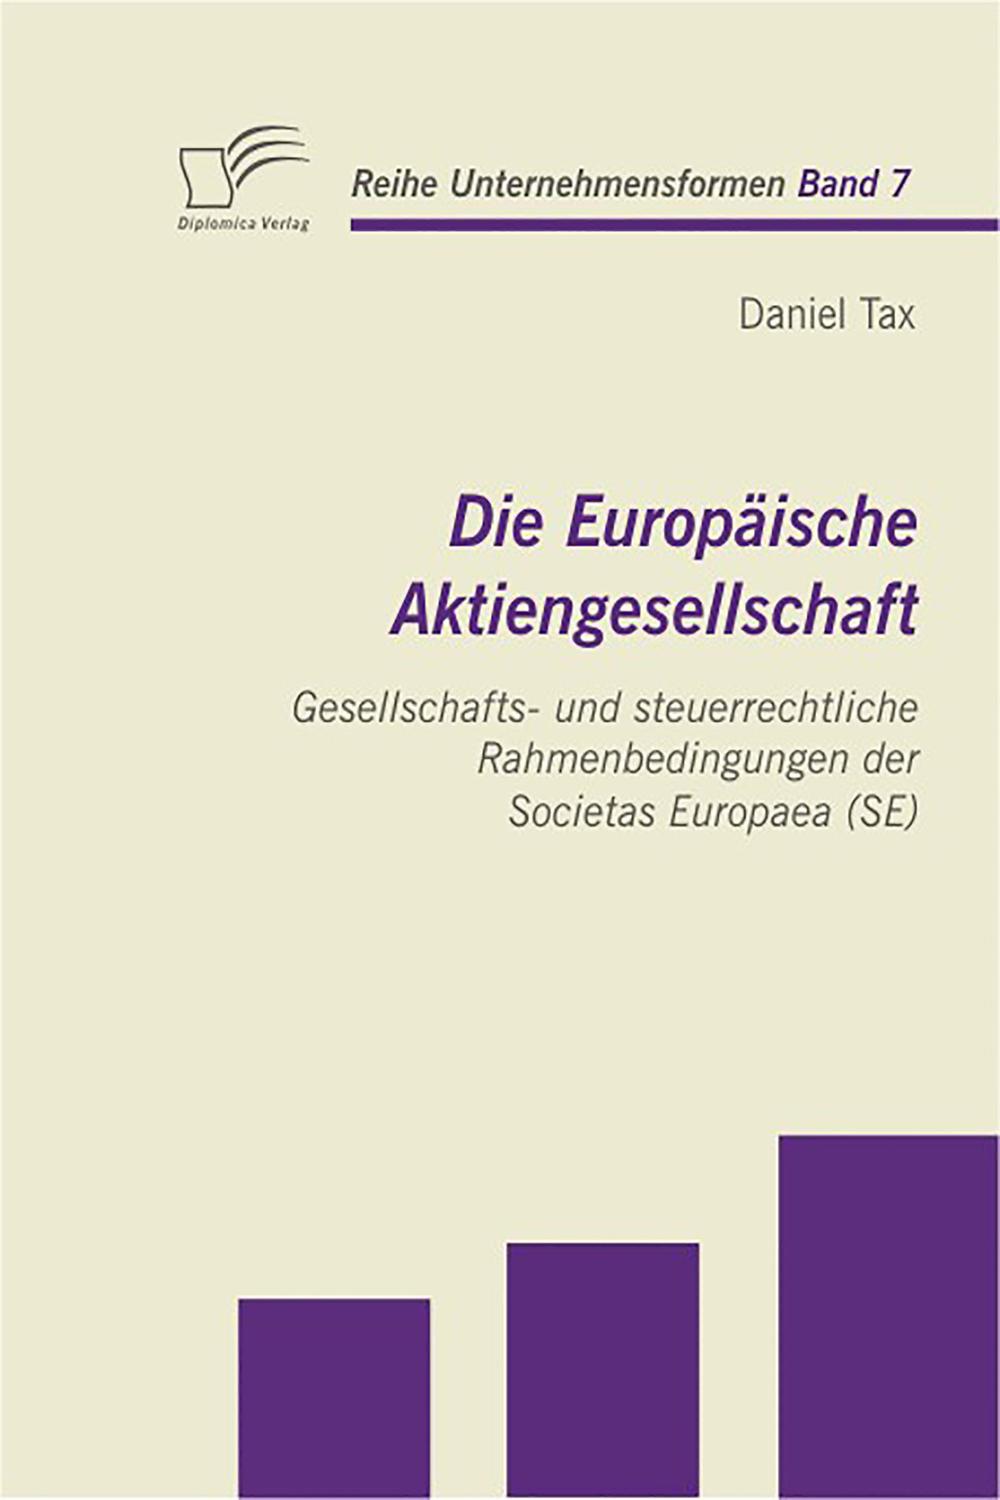 Die Europäische Aktiengesellschaft: Gesellschafts- und steuerrechtliche Rahmenbedingungen der Societas Europaea (SE) - Daniel Tax